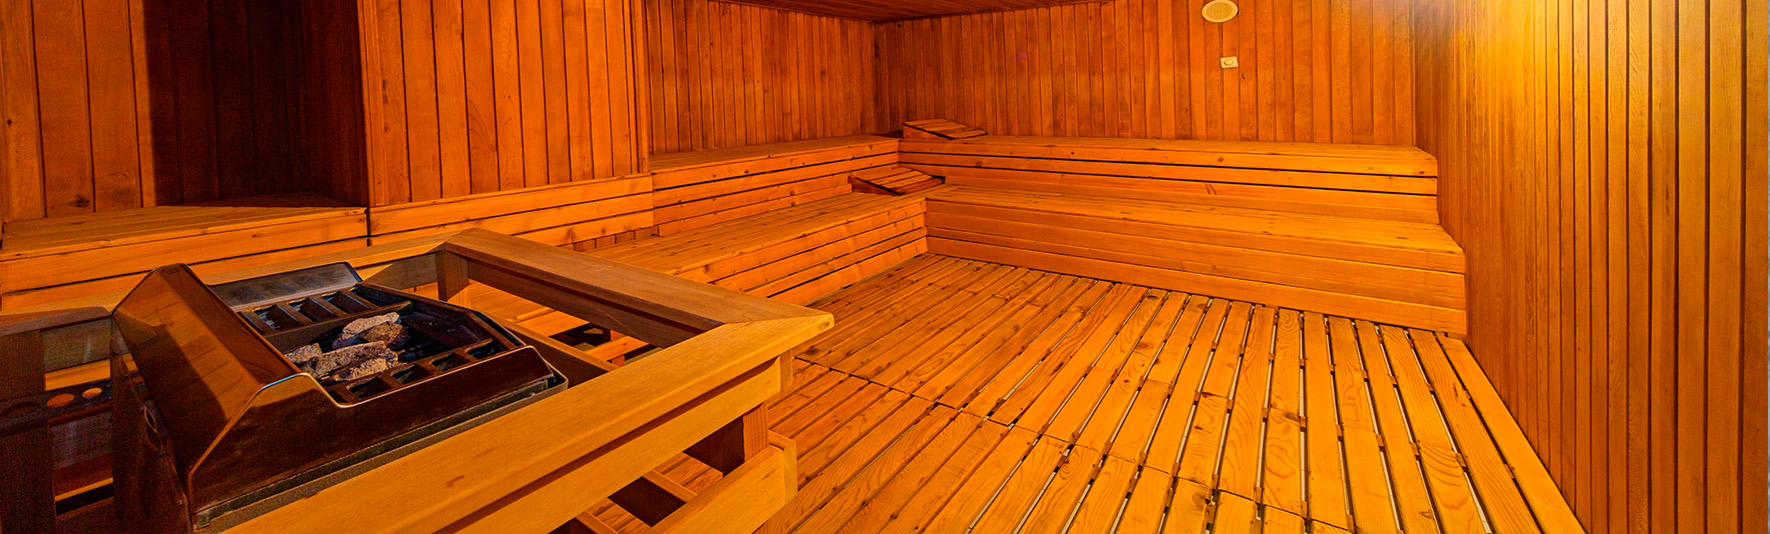 lausos palace spasauna masaj sauna 